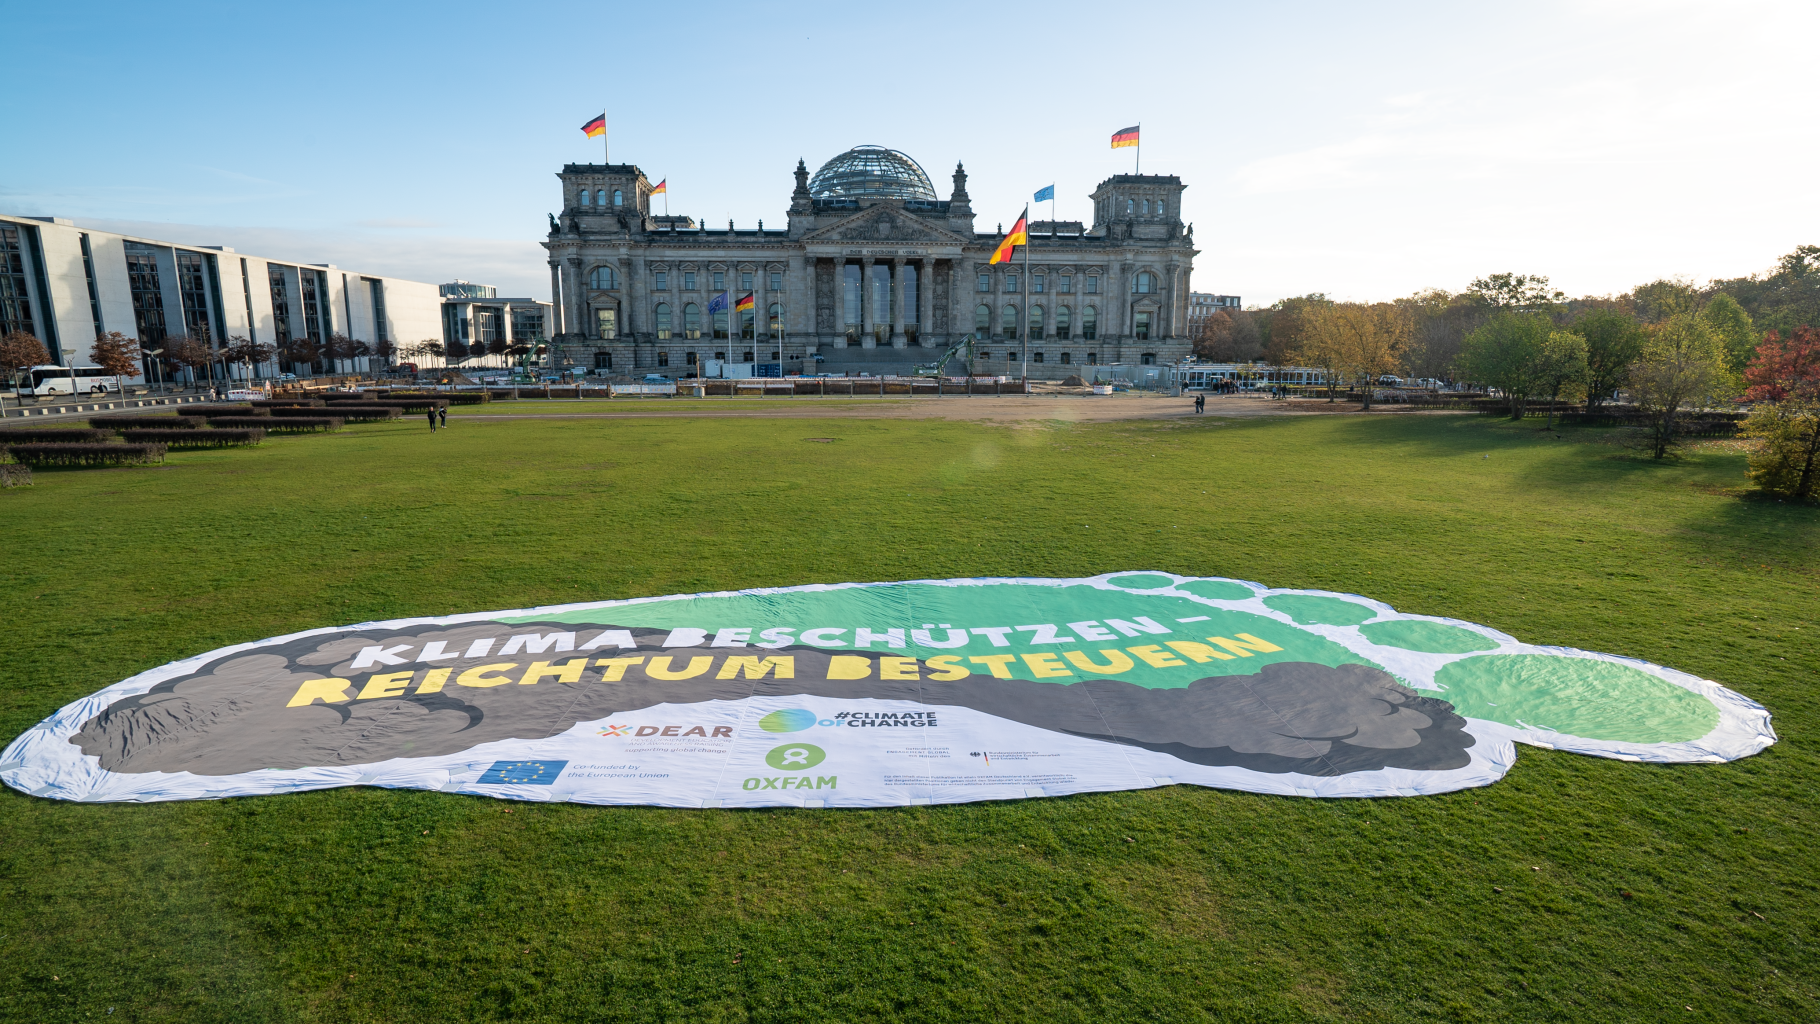 Überdemensionaler Fußabdruck als Tranparent auf der Wiese vor dem Reichstagsgebäude. Es trägt die Aufschrift "Klima beschützen - Reichtum bestuern"